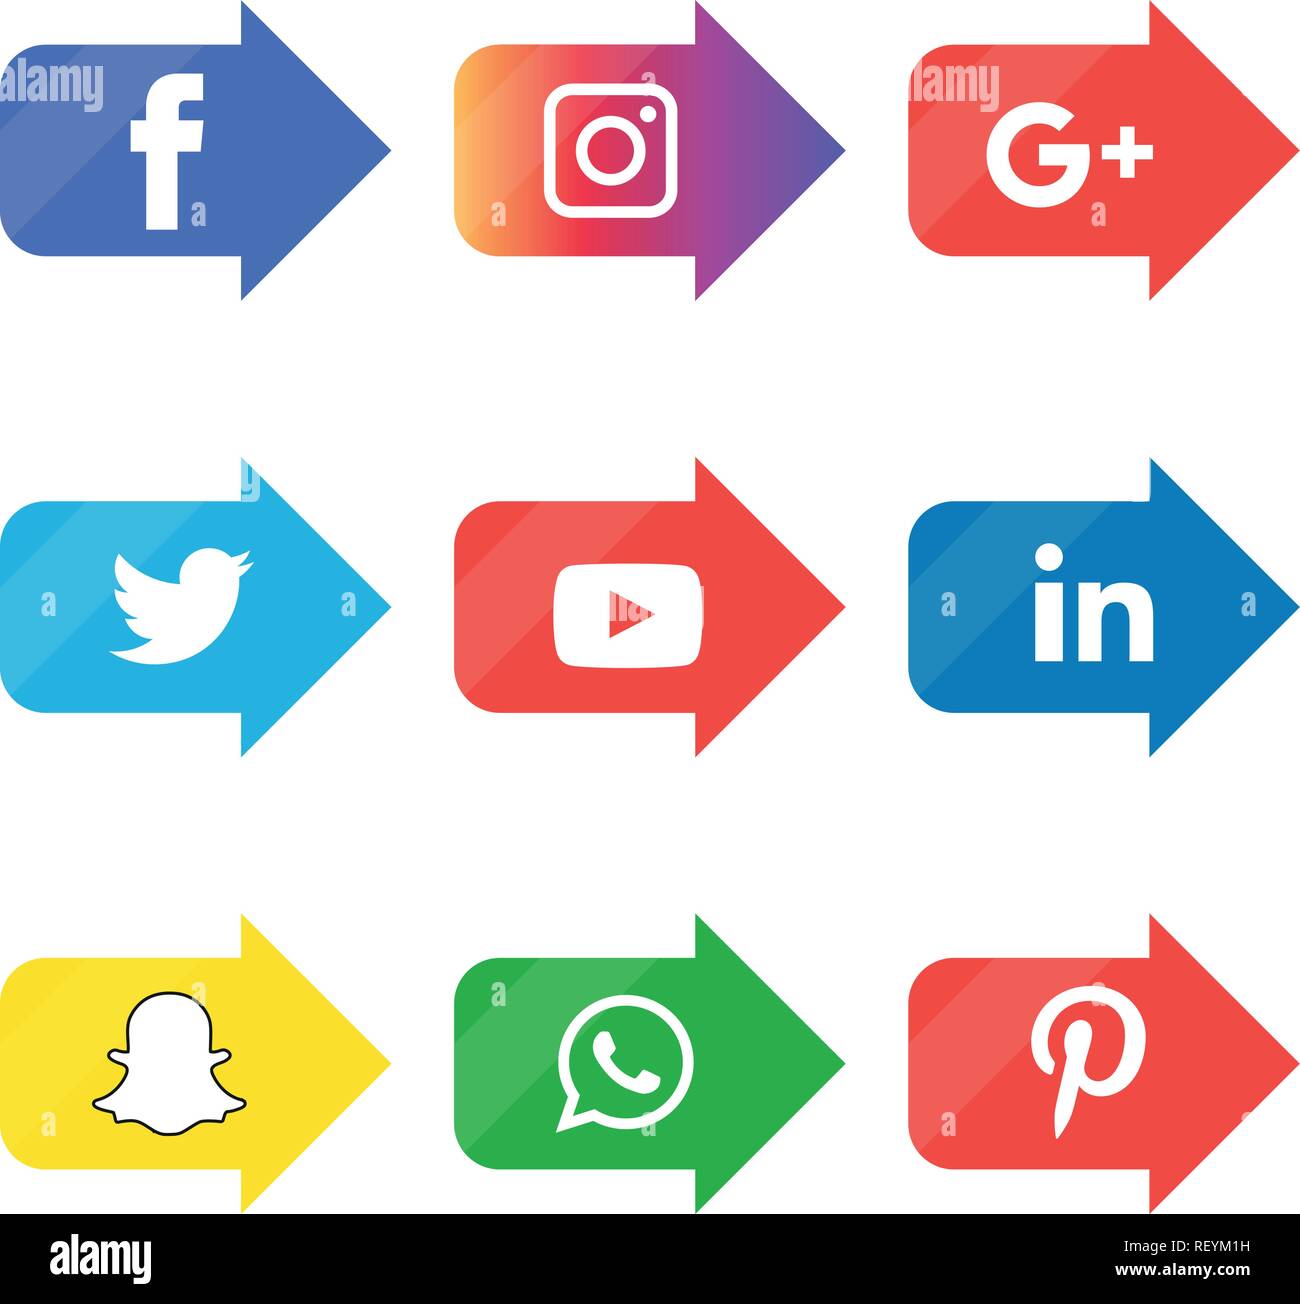 Social media icons set Logo Vector Illustrator facebook, instagram, twitter, whatsapp, google plus, google+, pinterest, linkedin, vector, black, white Stock Vector